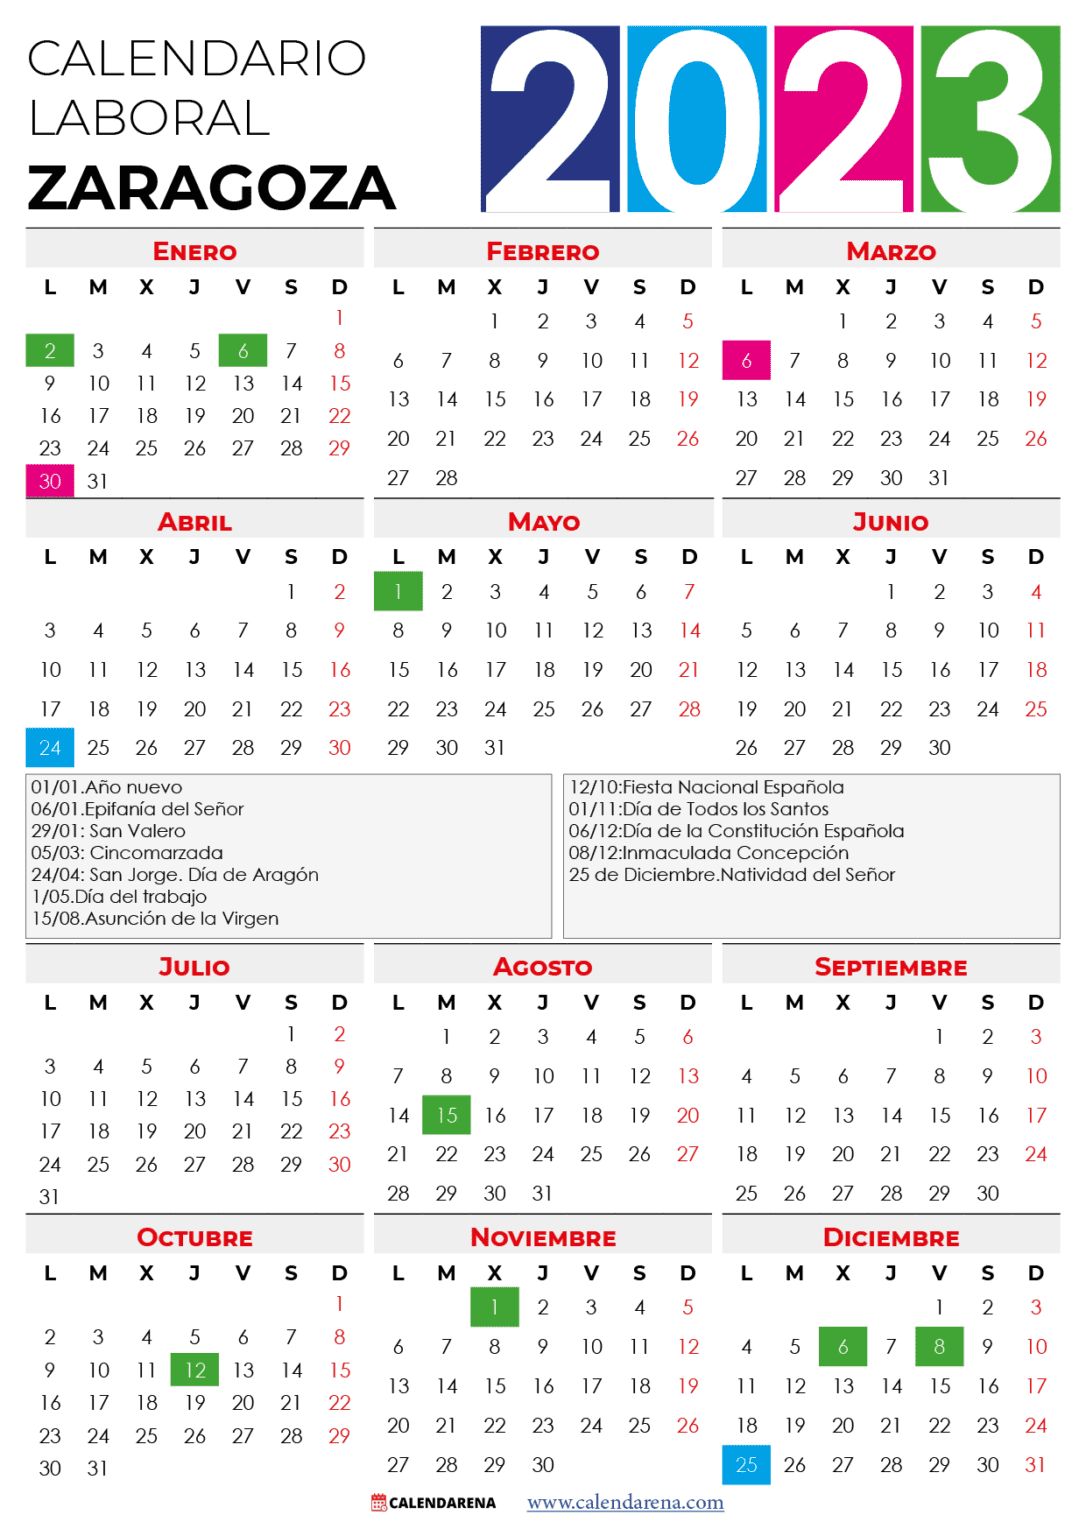 Calendario laboral zaragoza 2023 con festivos Calendarena